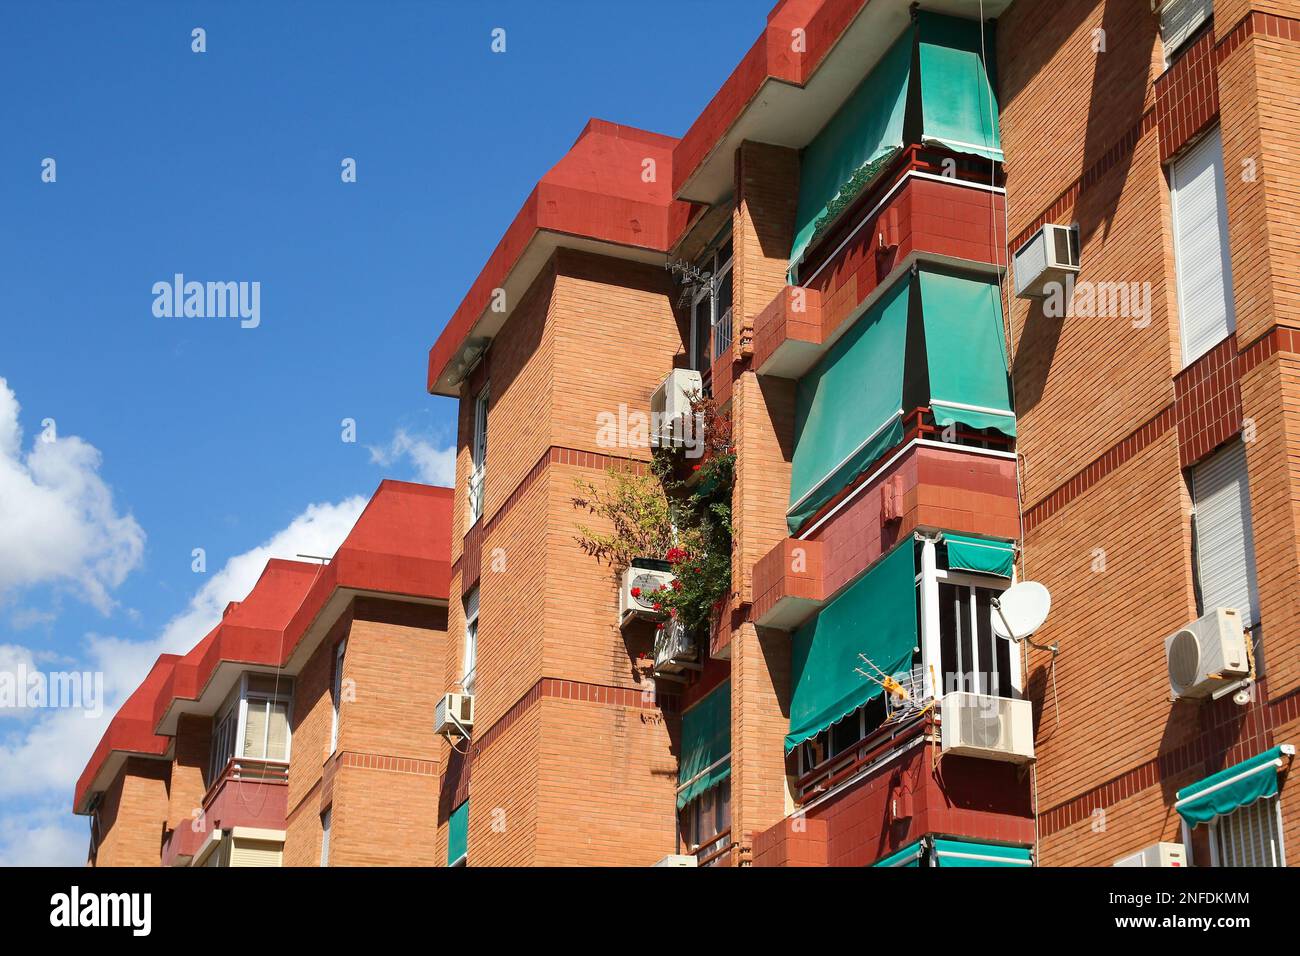 Allgemeine Backsteingebäude-Architektur in Malaga, Spanien. Durchschnittliches zeitgenössisches Appartement. Stockfoto